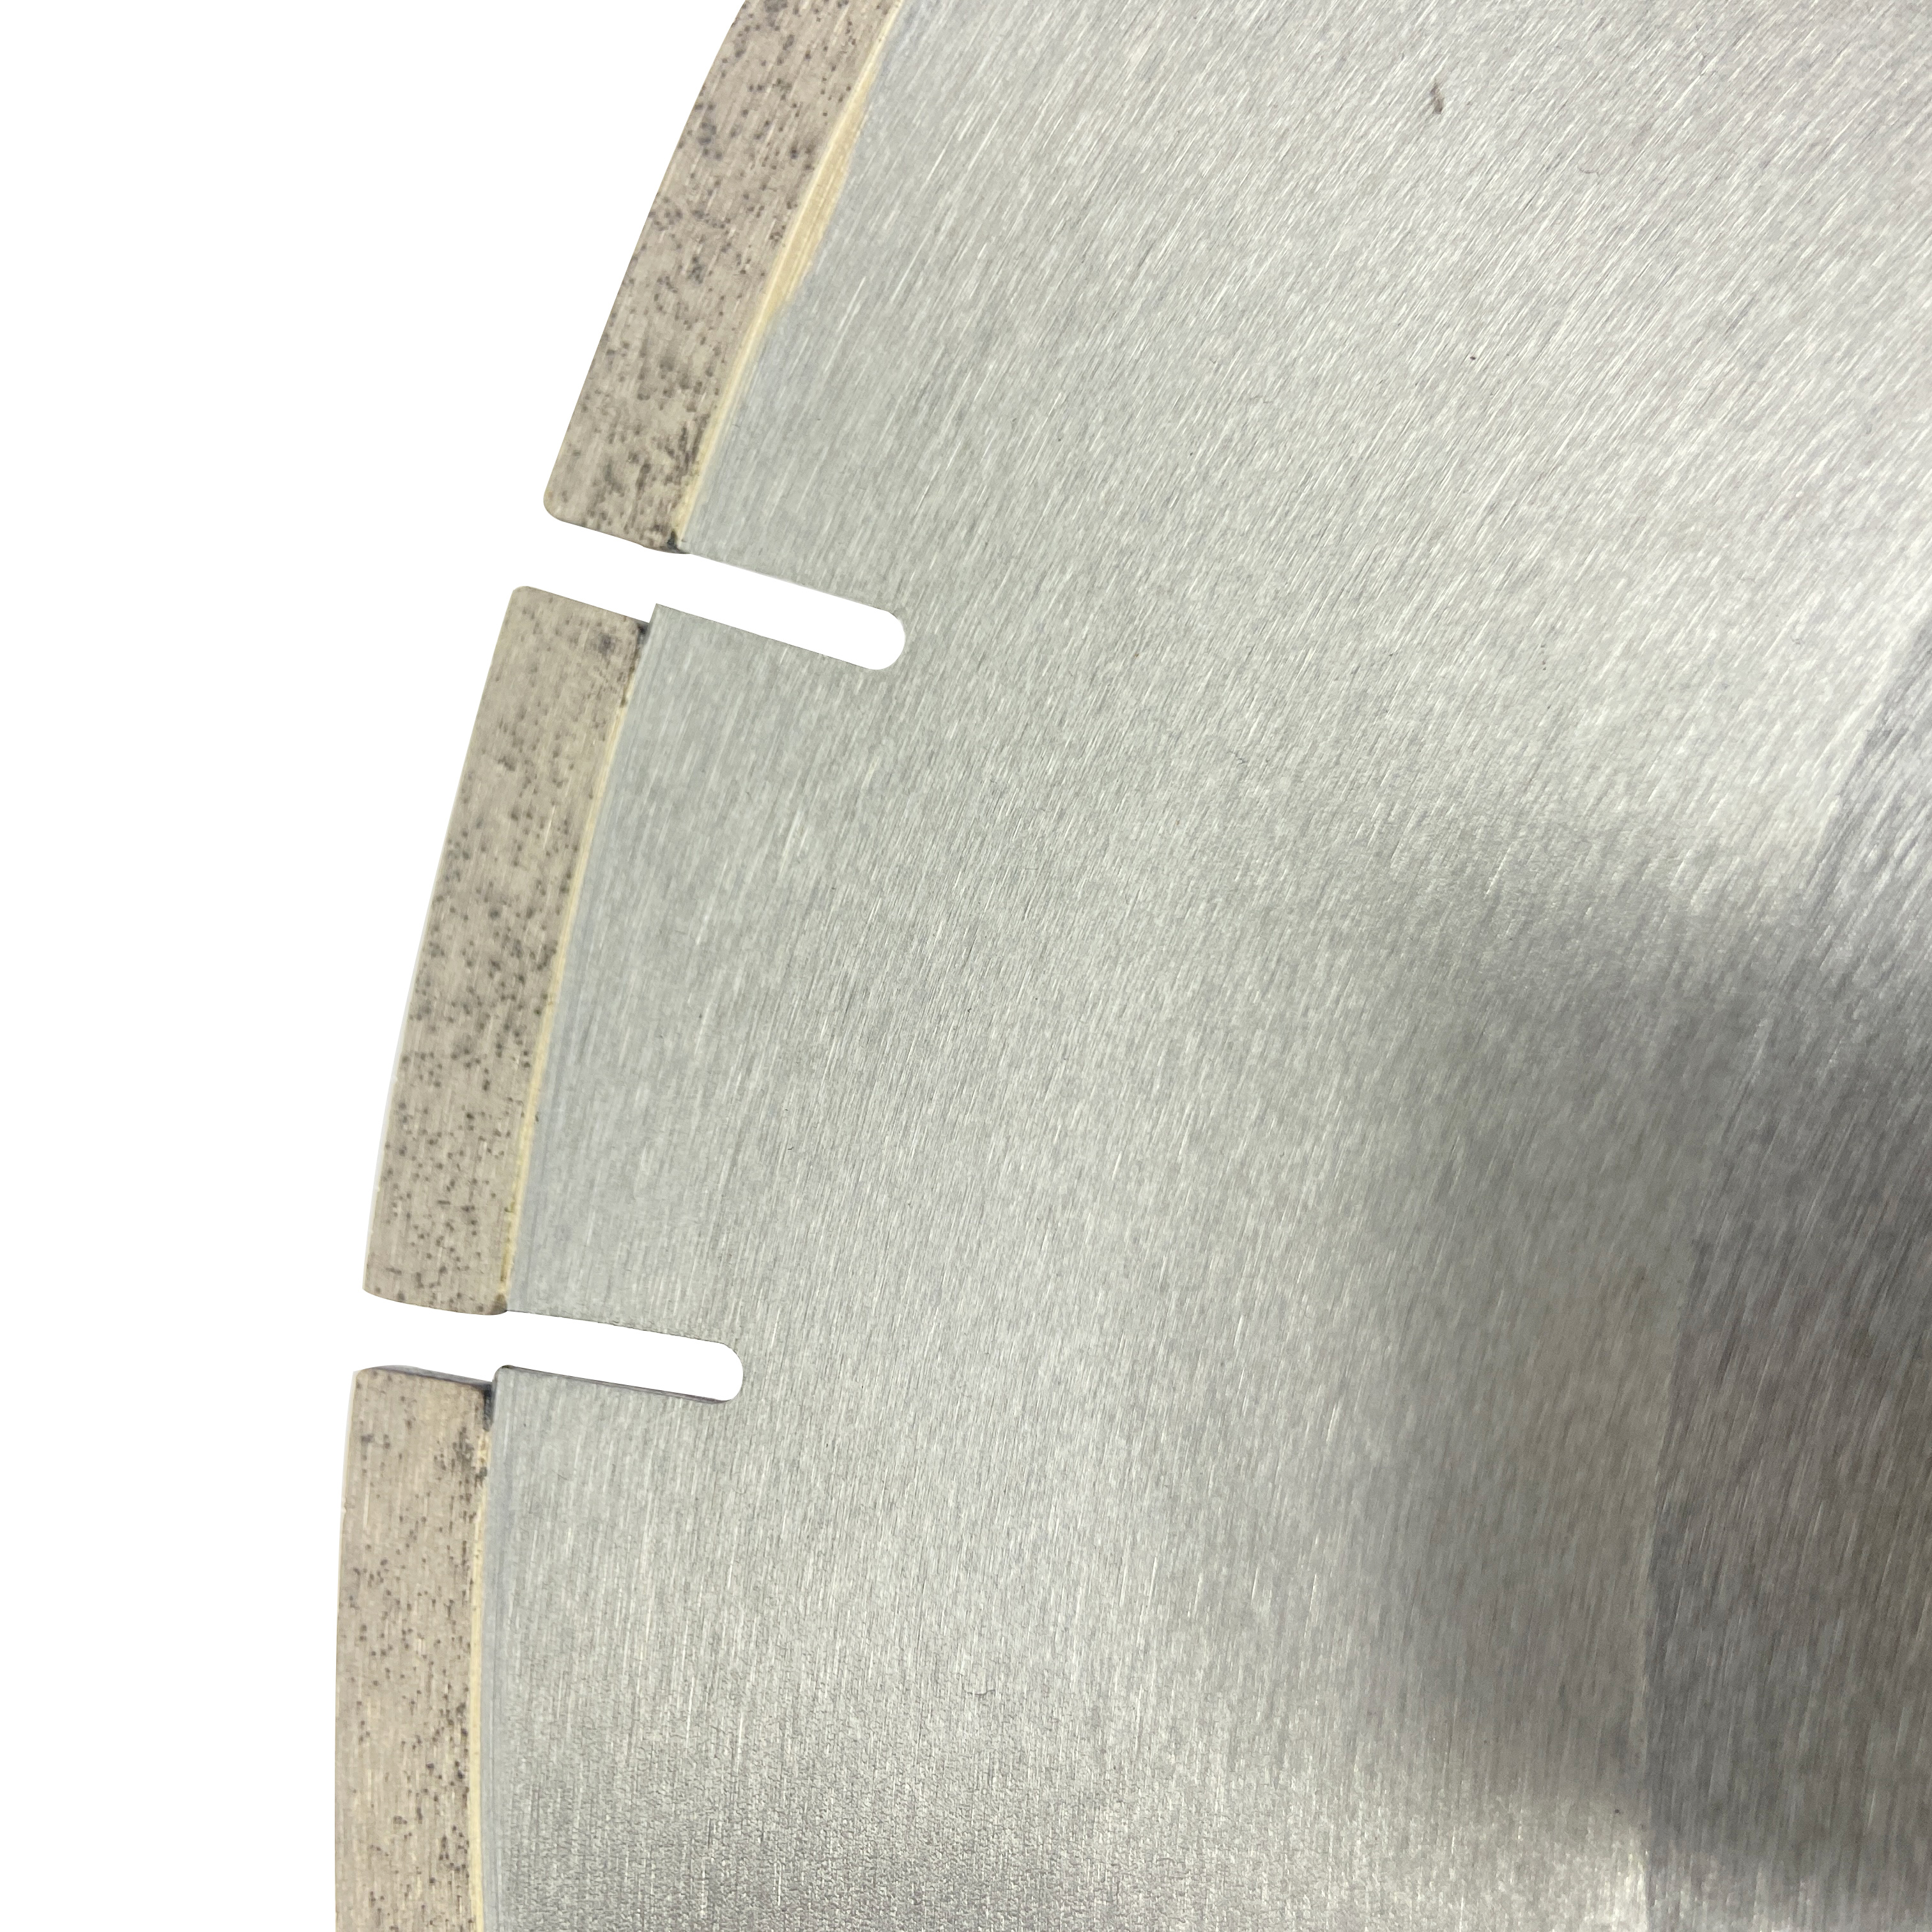 Hoja de sierra de diamante con ranura en J segmentada de 12 pulgadas, 456*10*60mm, soldada con plata Premium para cortar pavo Seramic Dekton